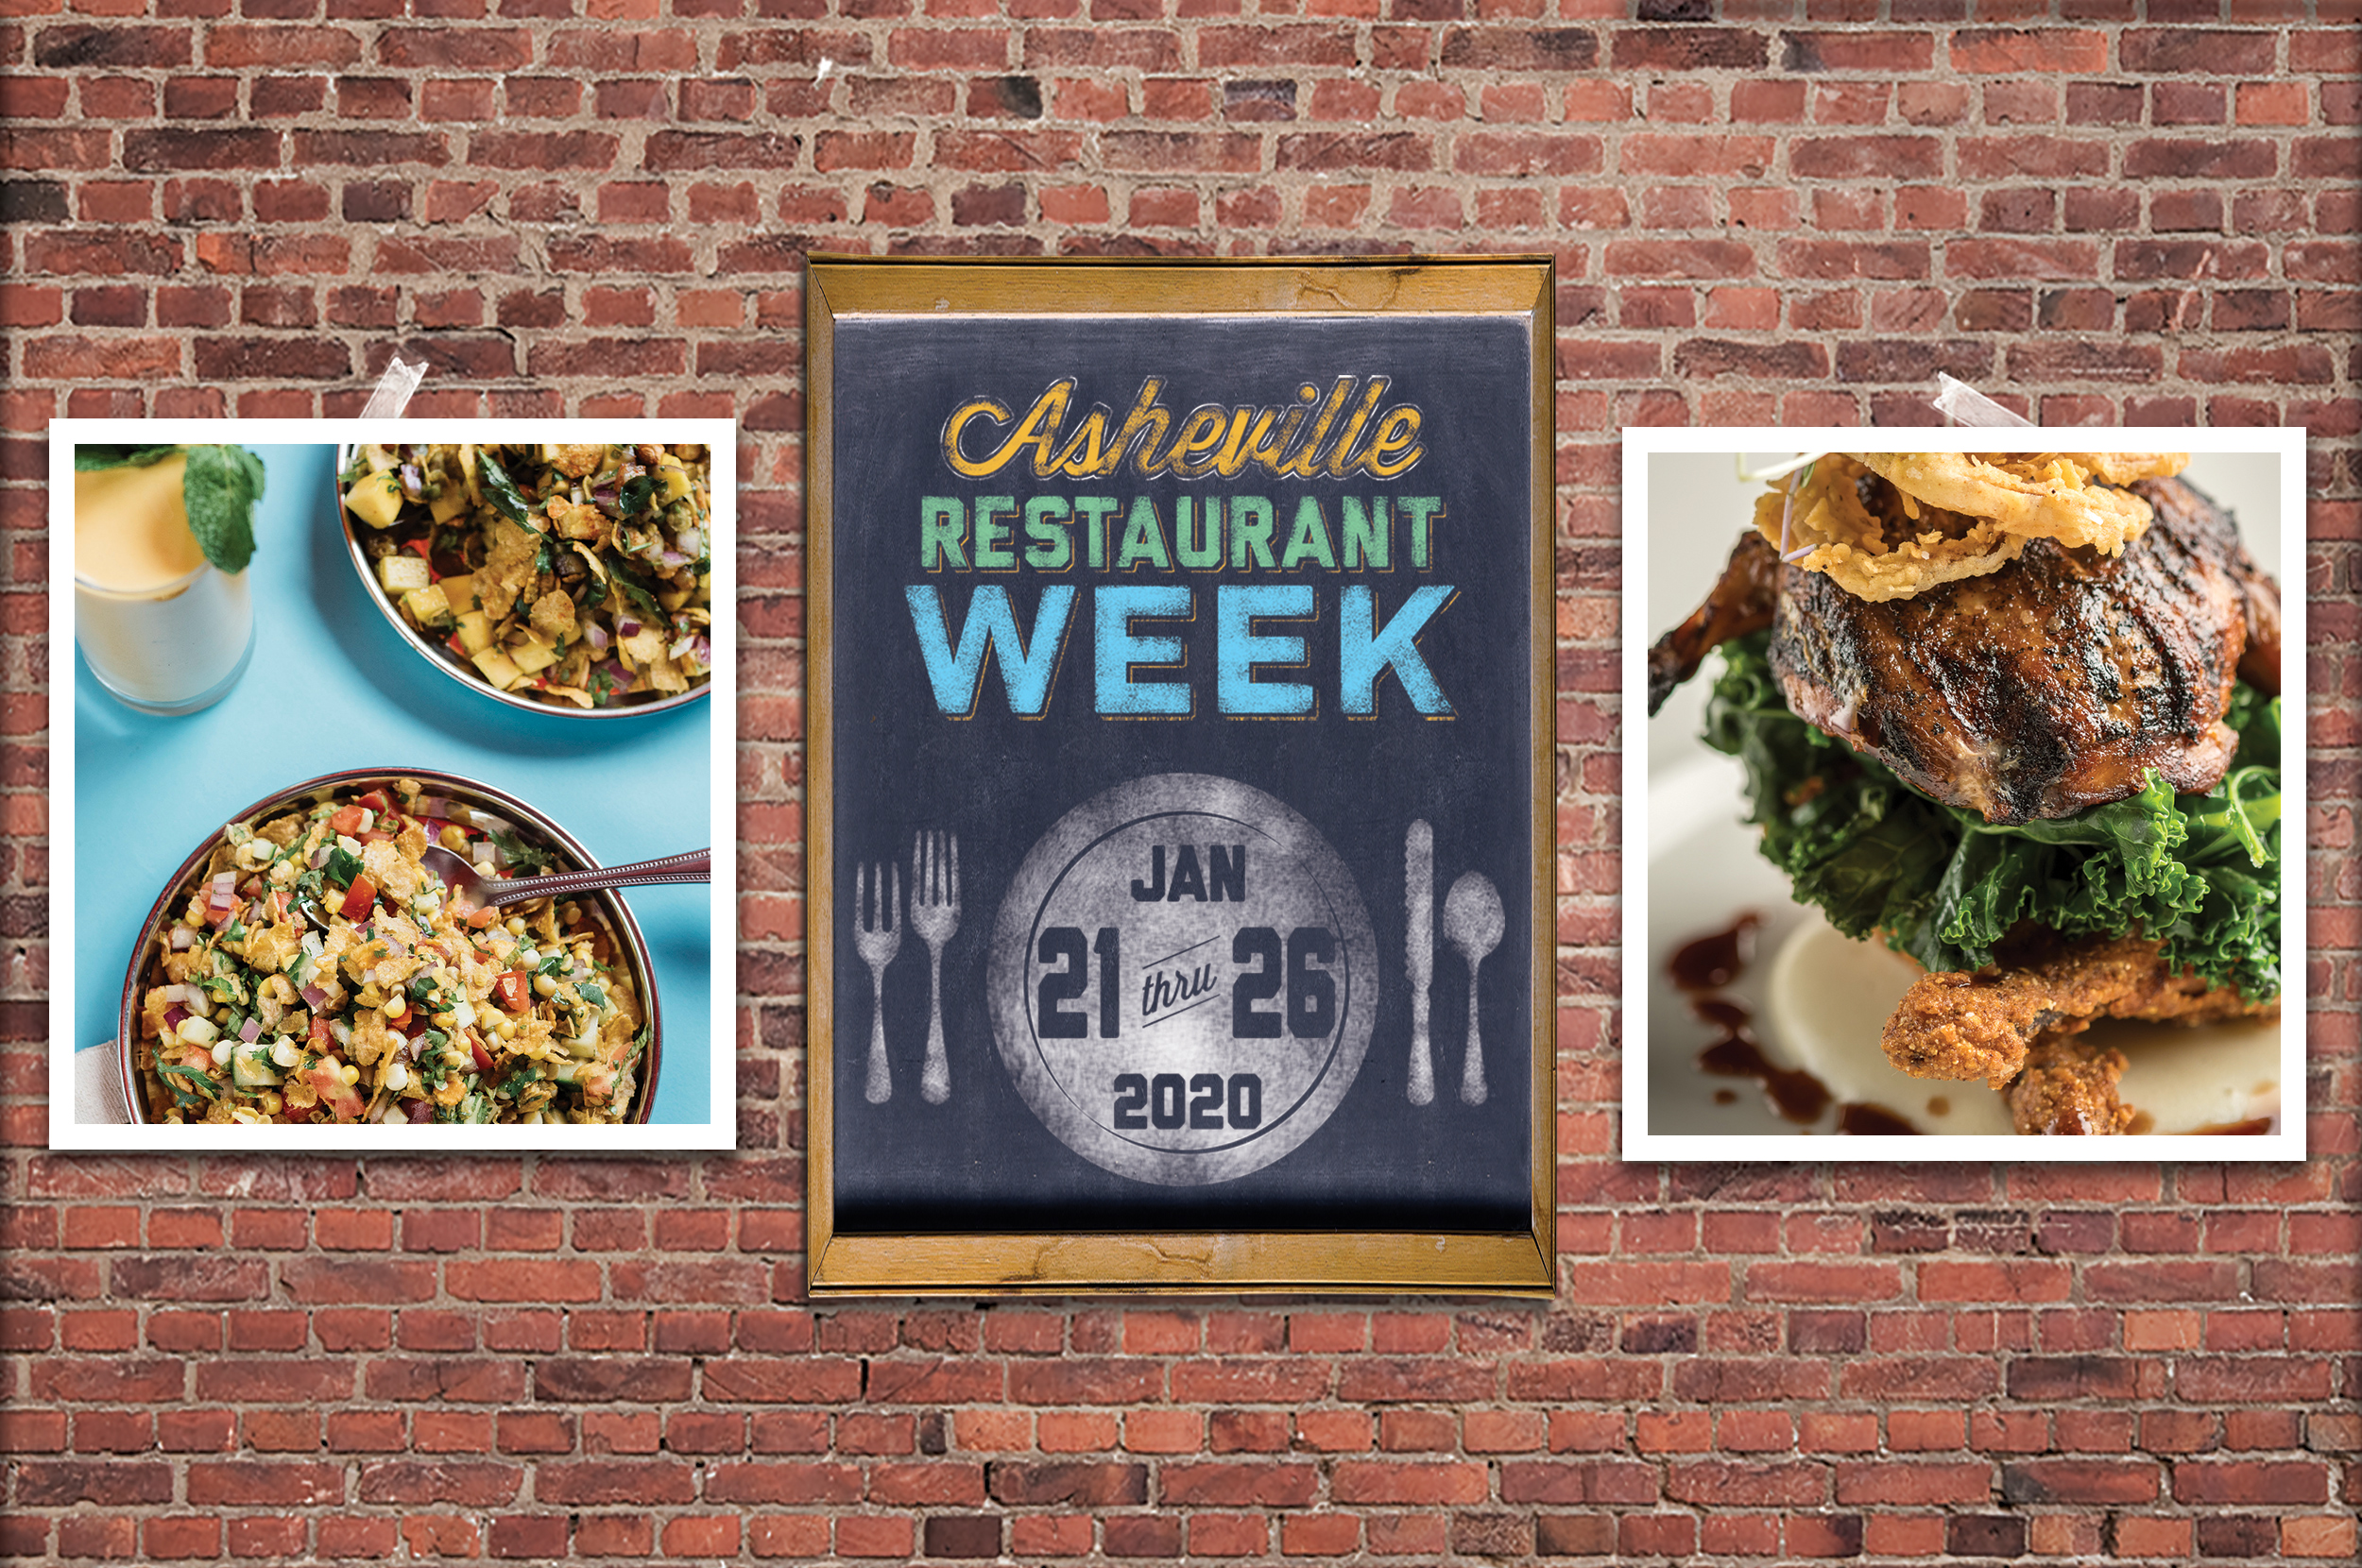 Asheville Restaurant Week Asheville Area Chamber of Commerce